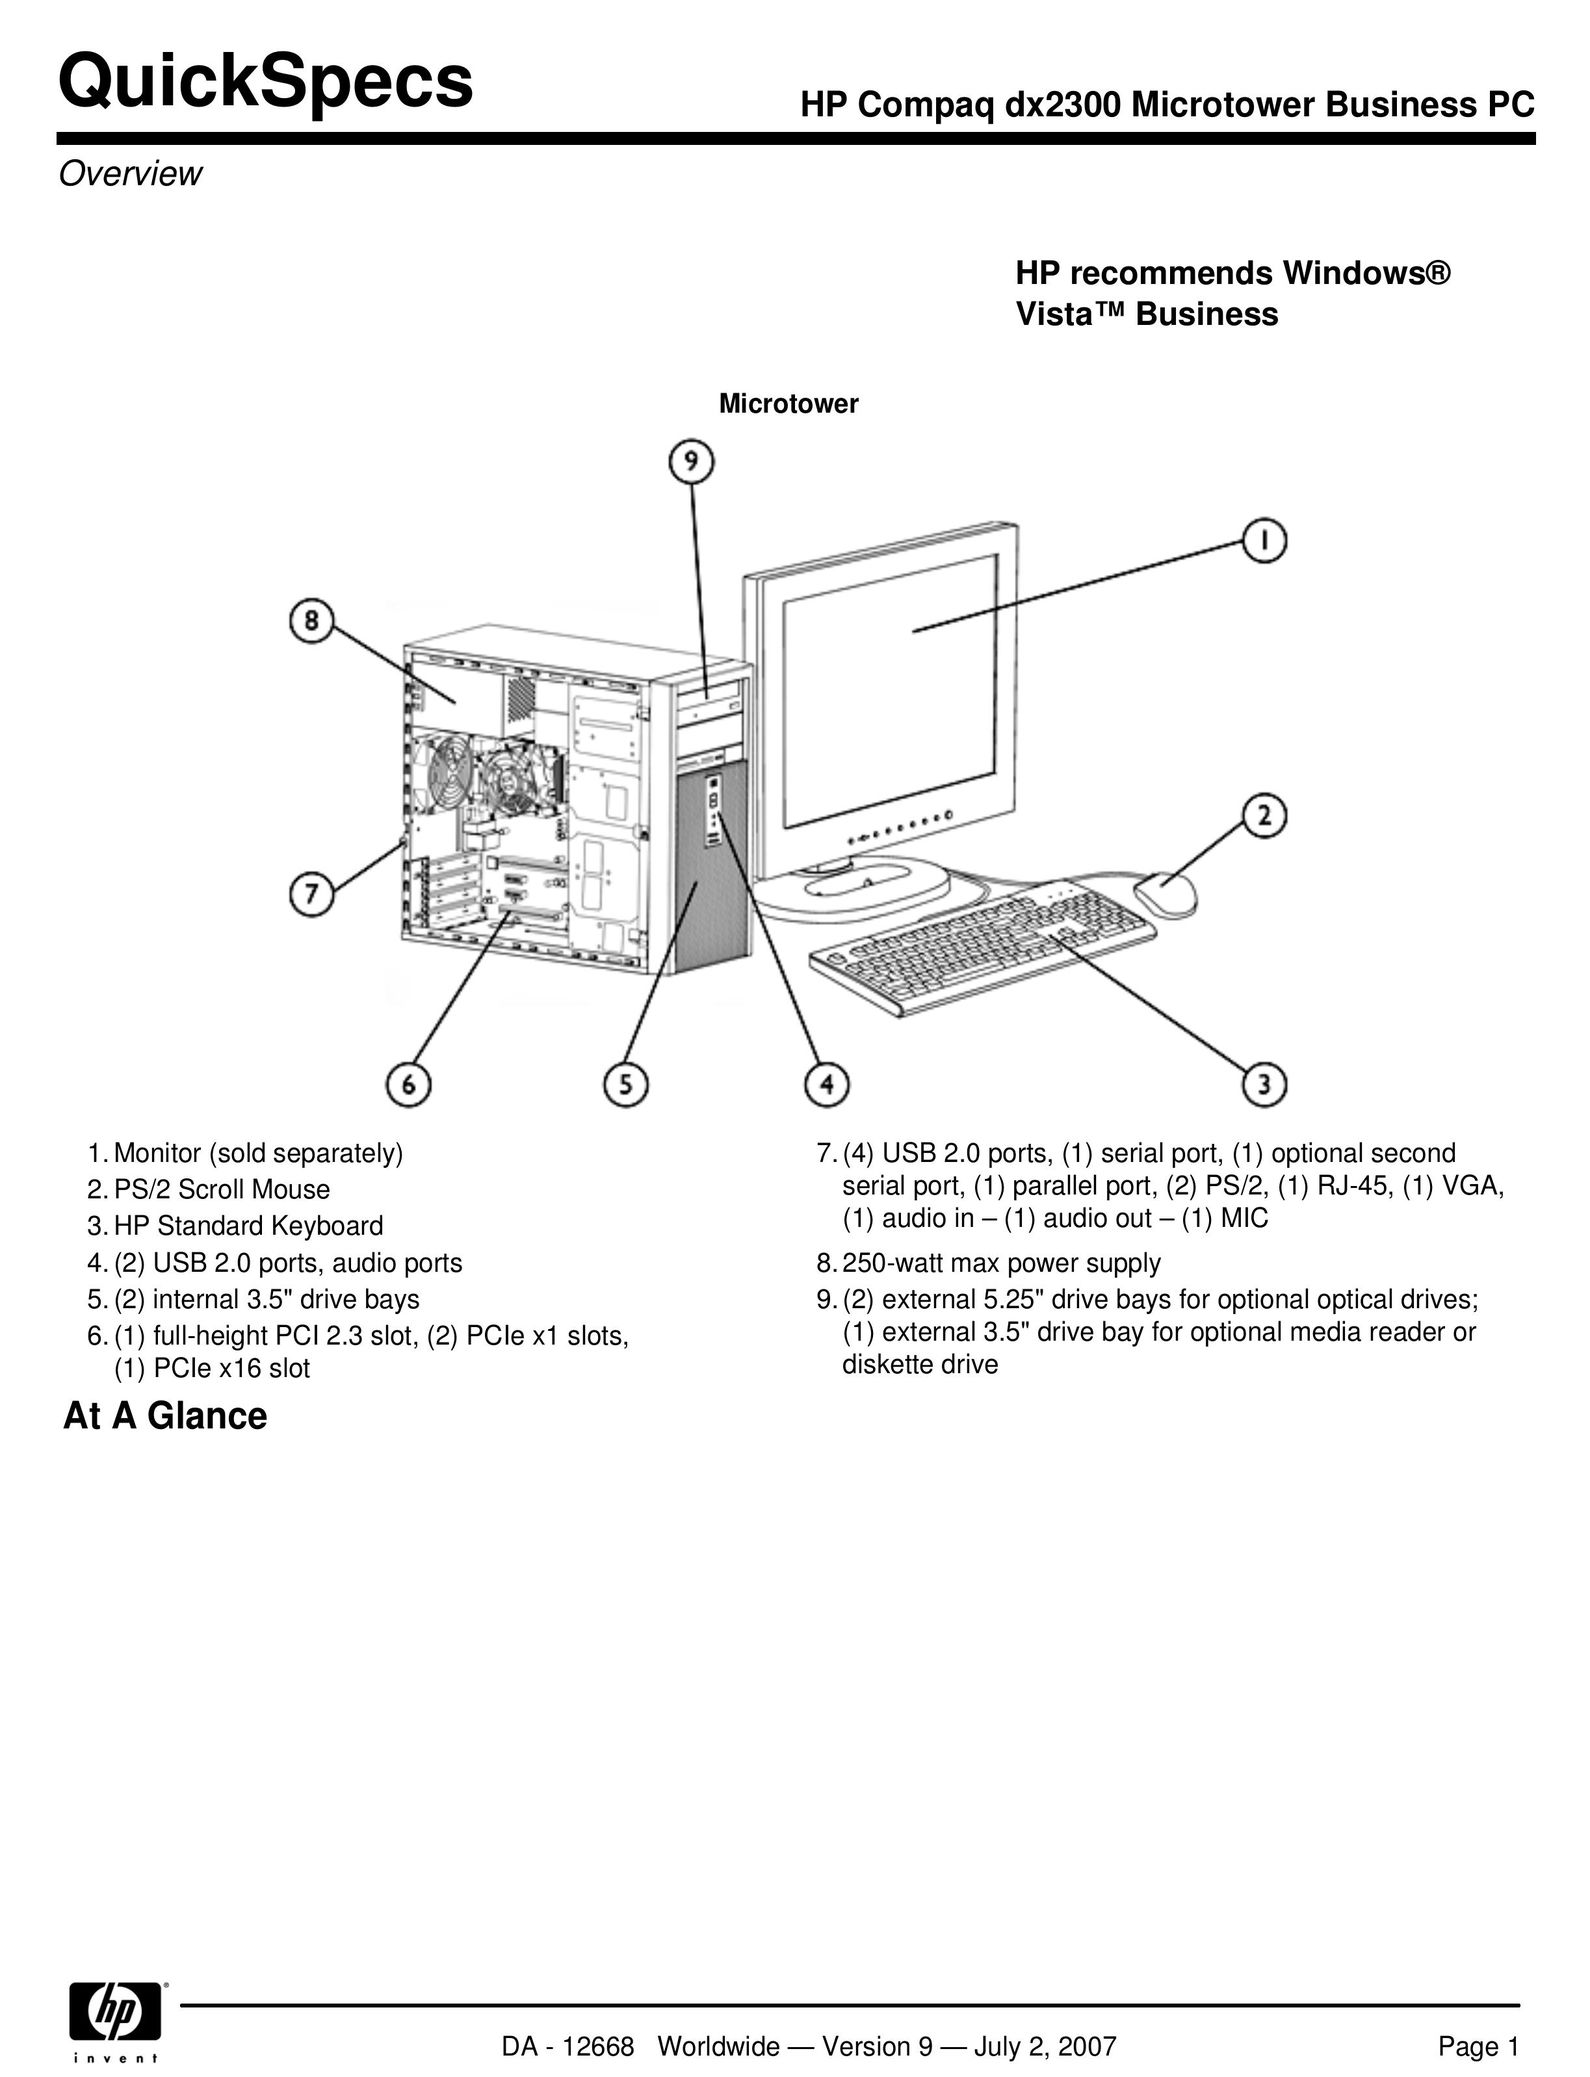 HP (Hewlett-Packard) DX2300 Computer Accessories User Manual